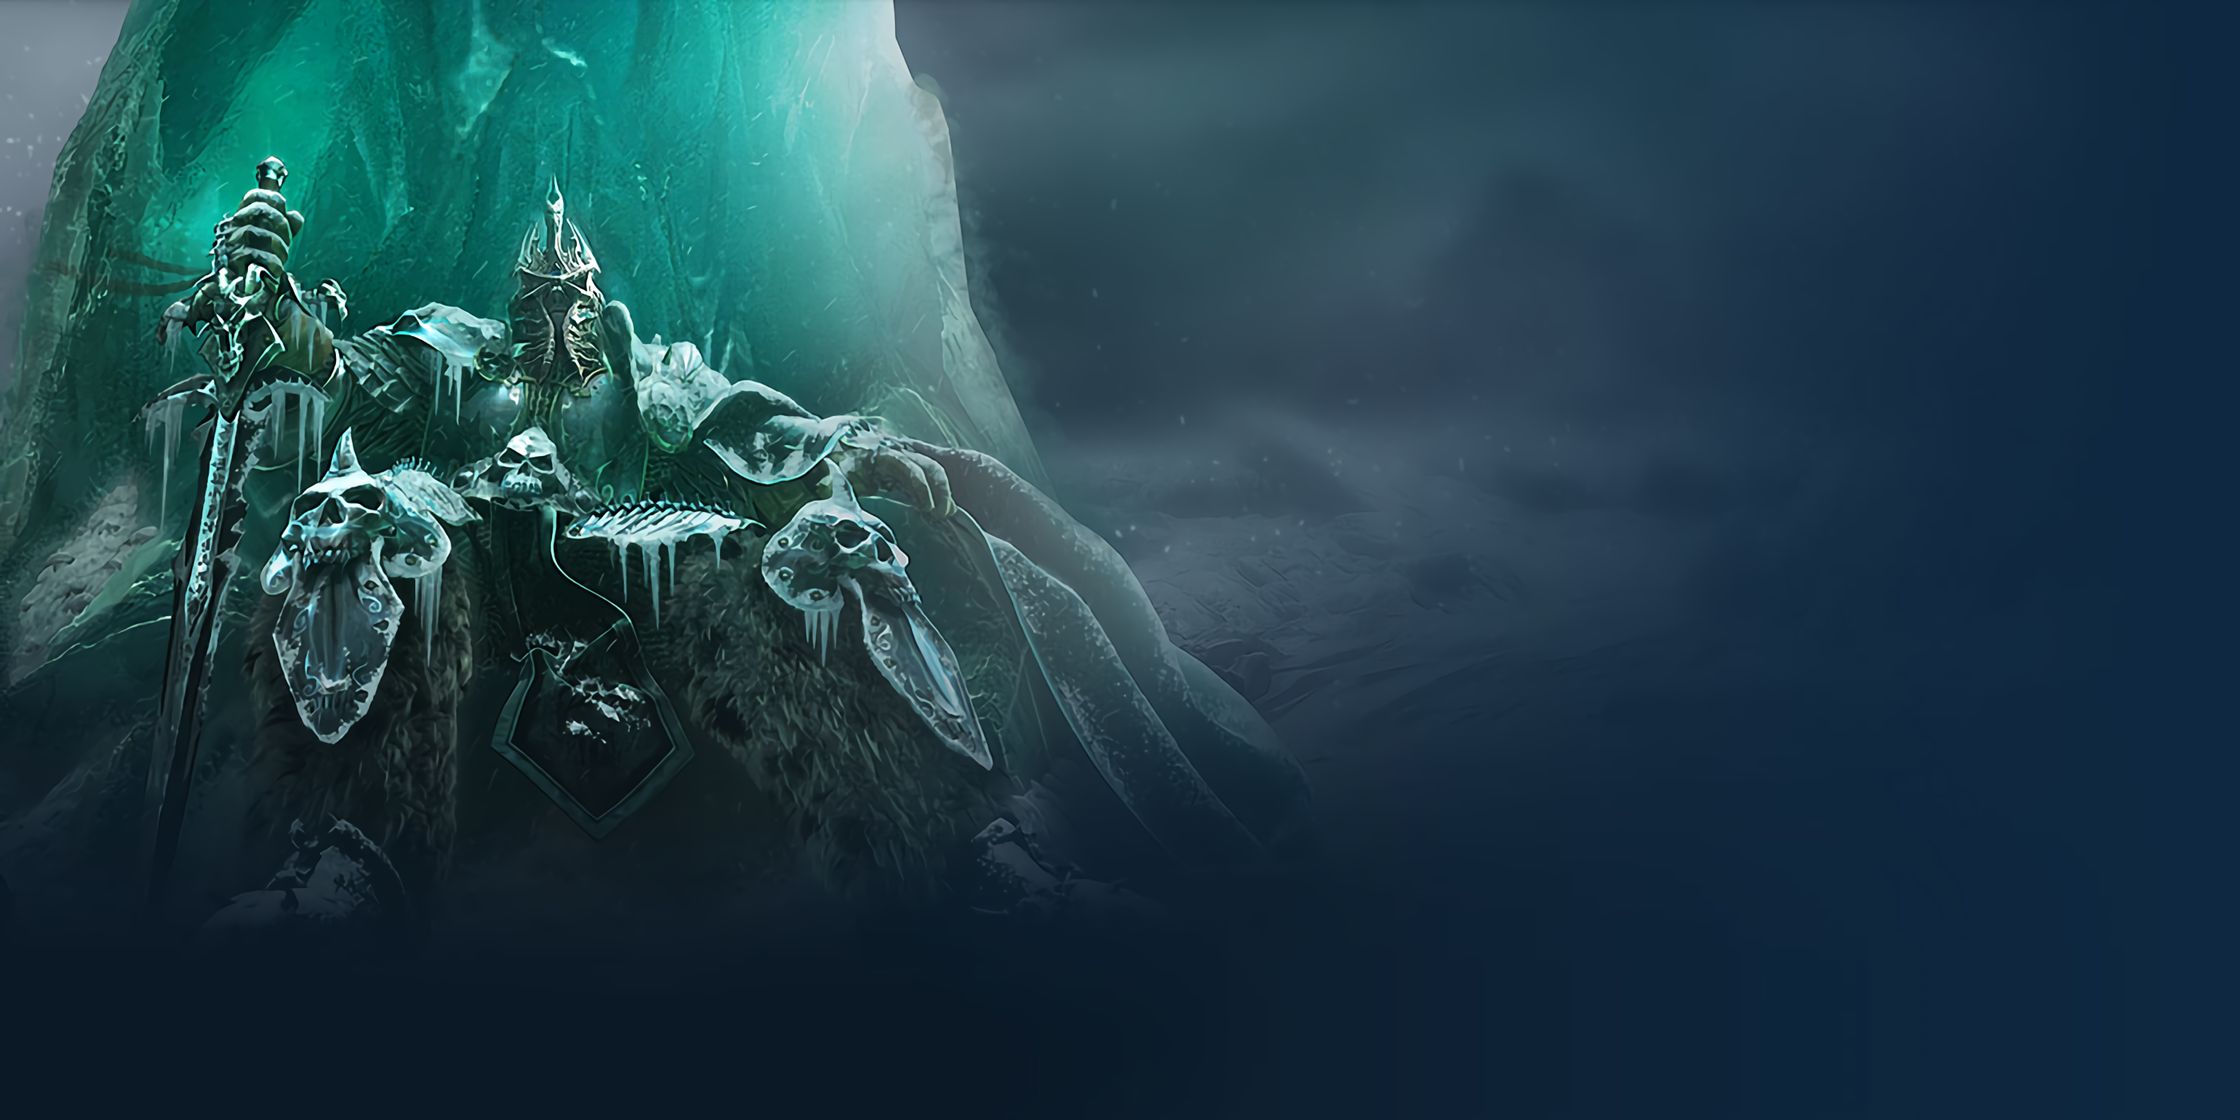 Lich King Arthas Menethil là một trong những nhân vật được yêu thích trong game Warcraft. Với hình nền game HD Lich King Arthas Menethil, bạn sẽ cảm thấy được tận hưởng không khí của thế giới game đầy mê hoặc này. Hãy xem ngay hình ảnh liên quan đến từ khóa này và tìm cho mình một hình nền game ấn tượng nhé!